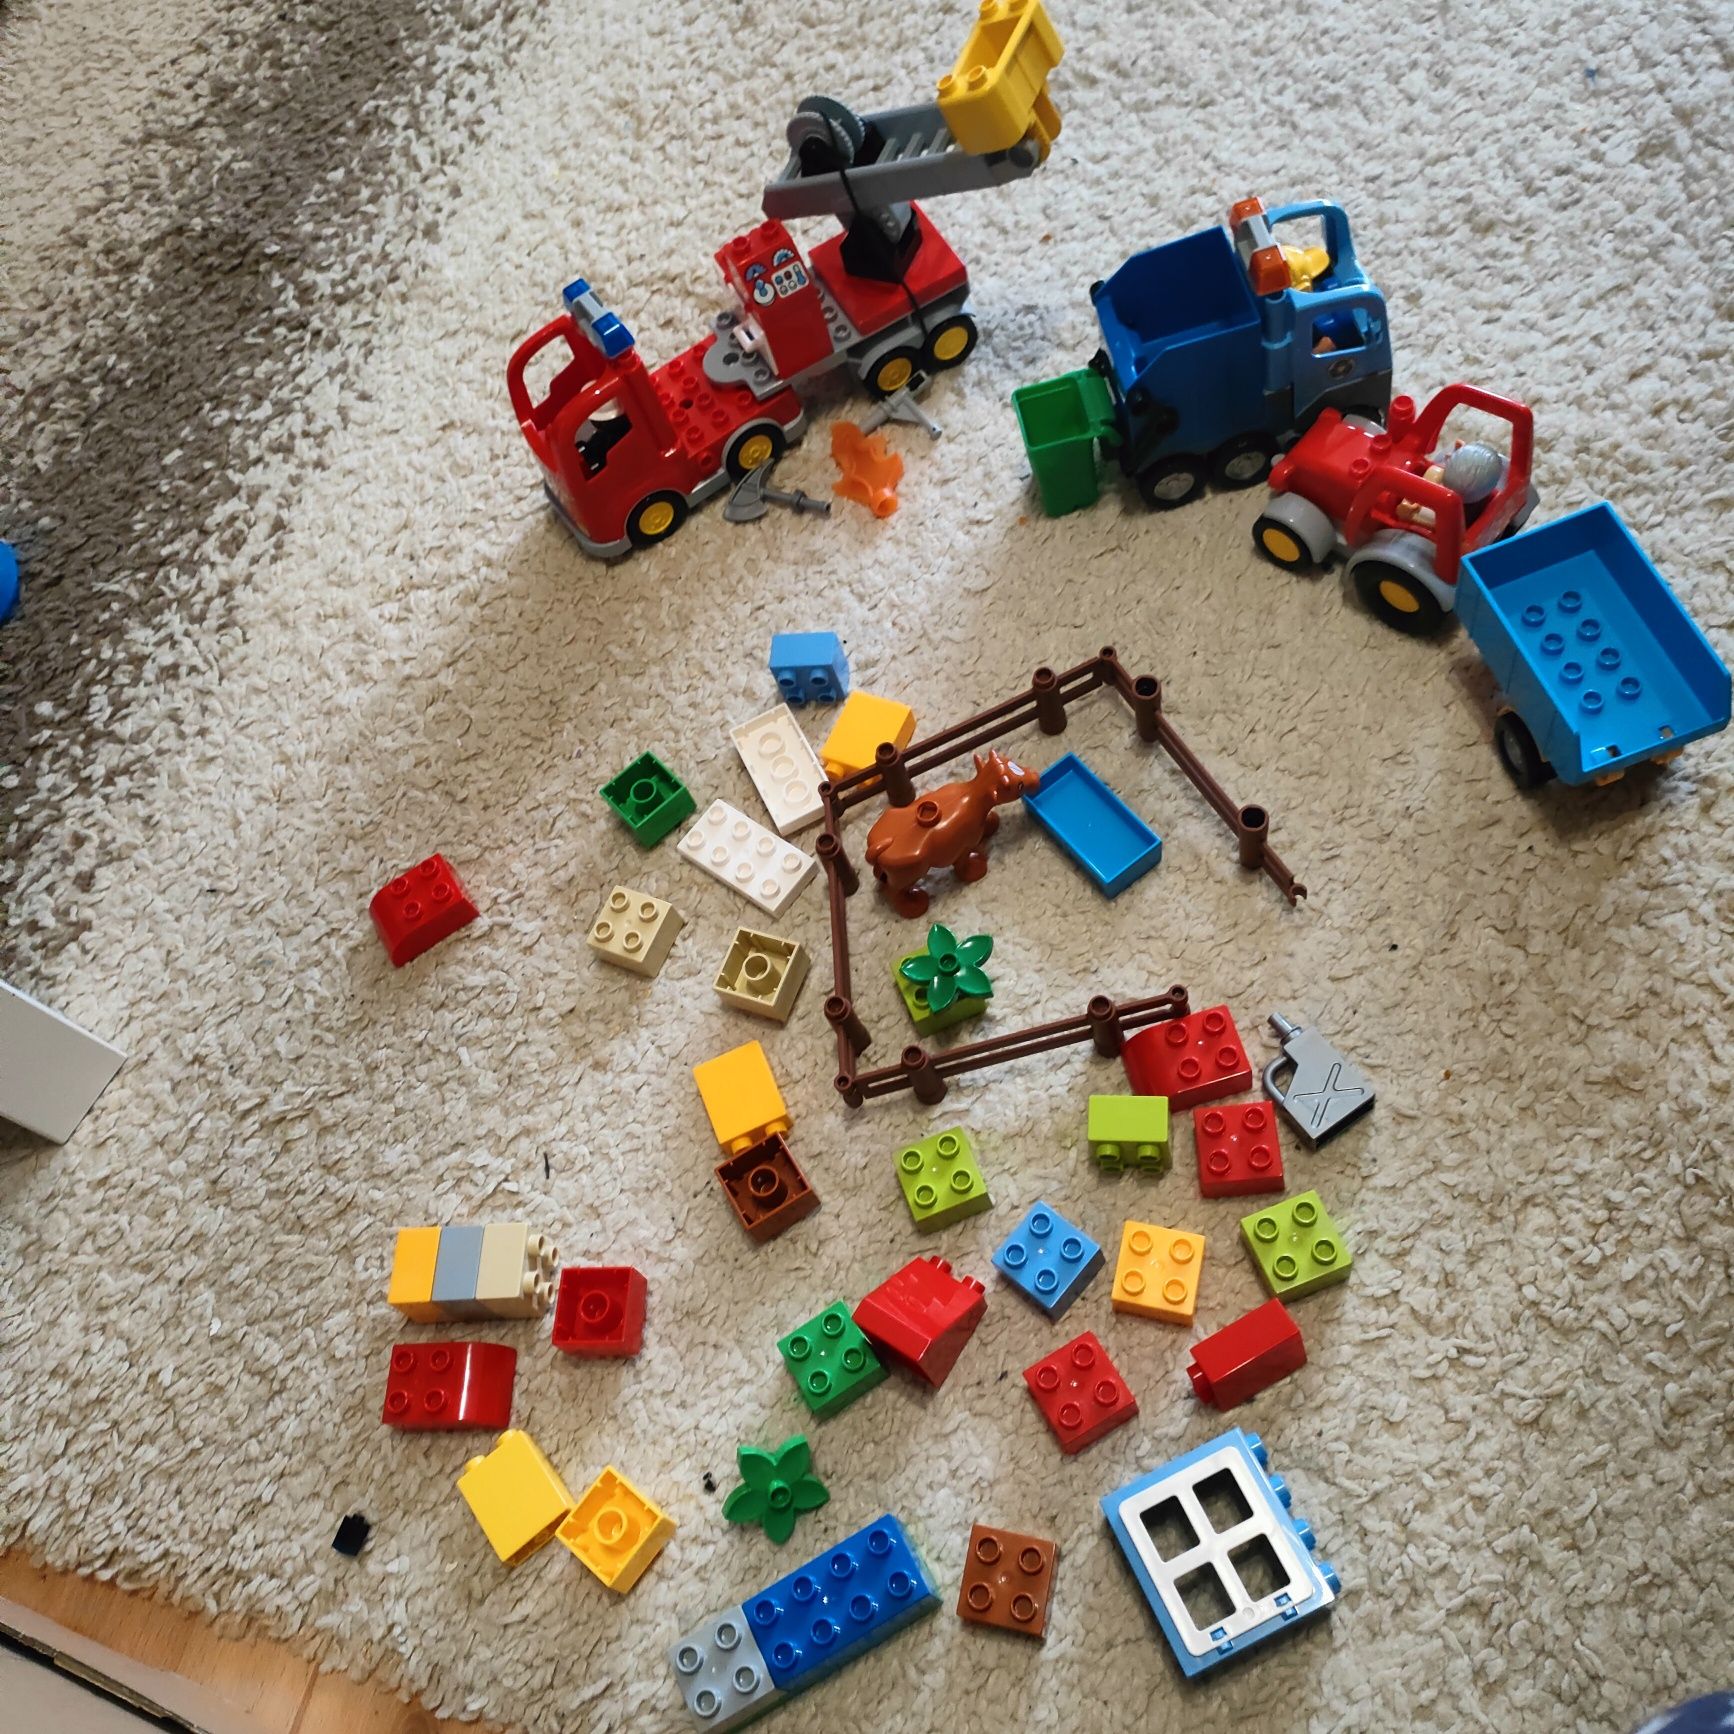 Klocki LEGO Duplo 3 zestawy śmieciarka straż pożarna  traktor